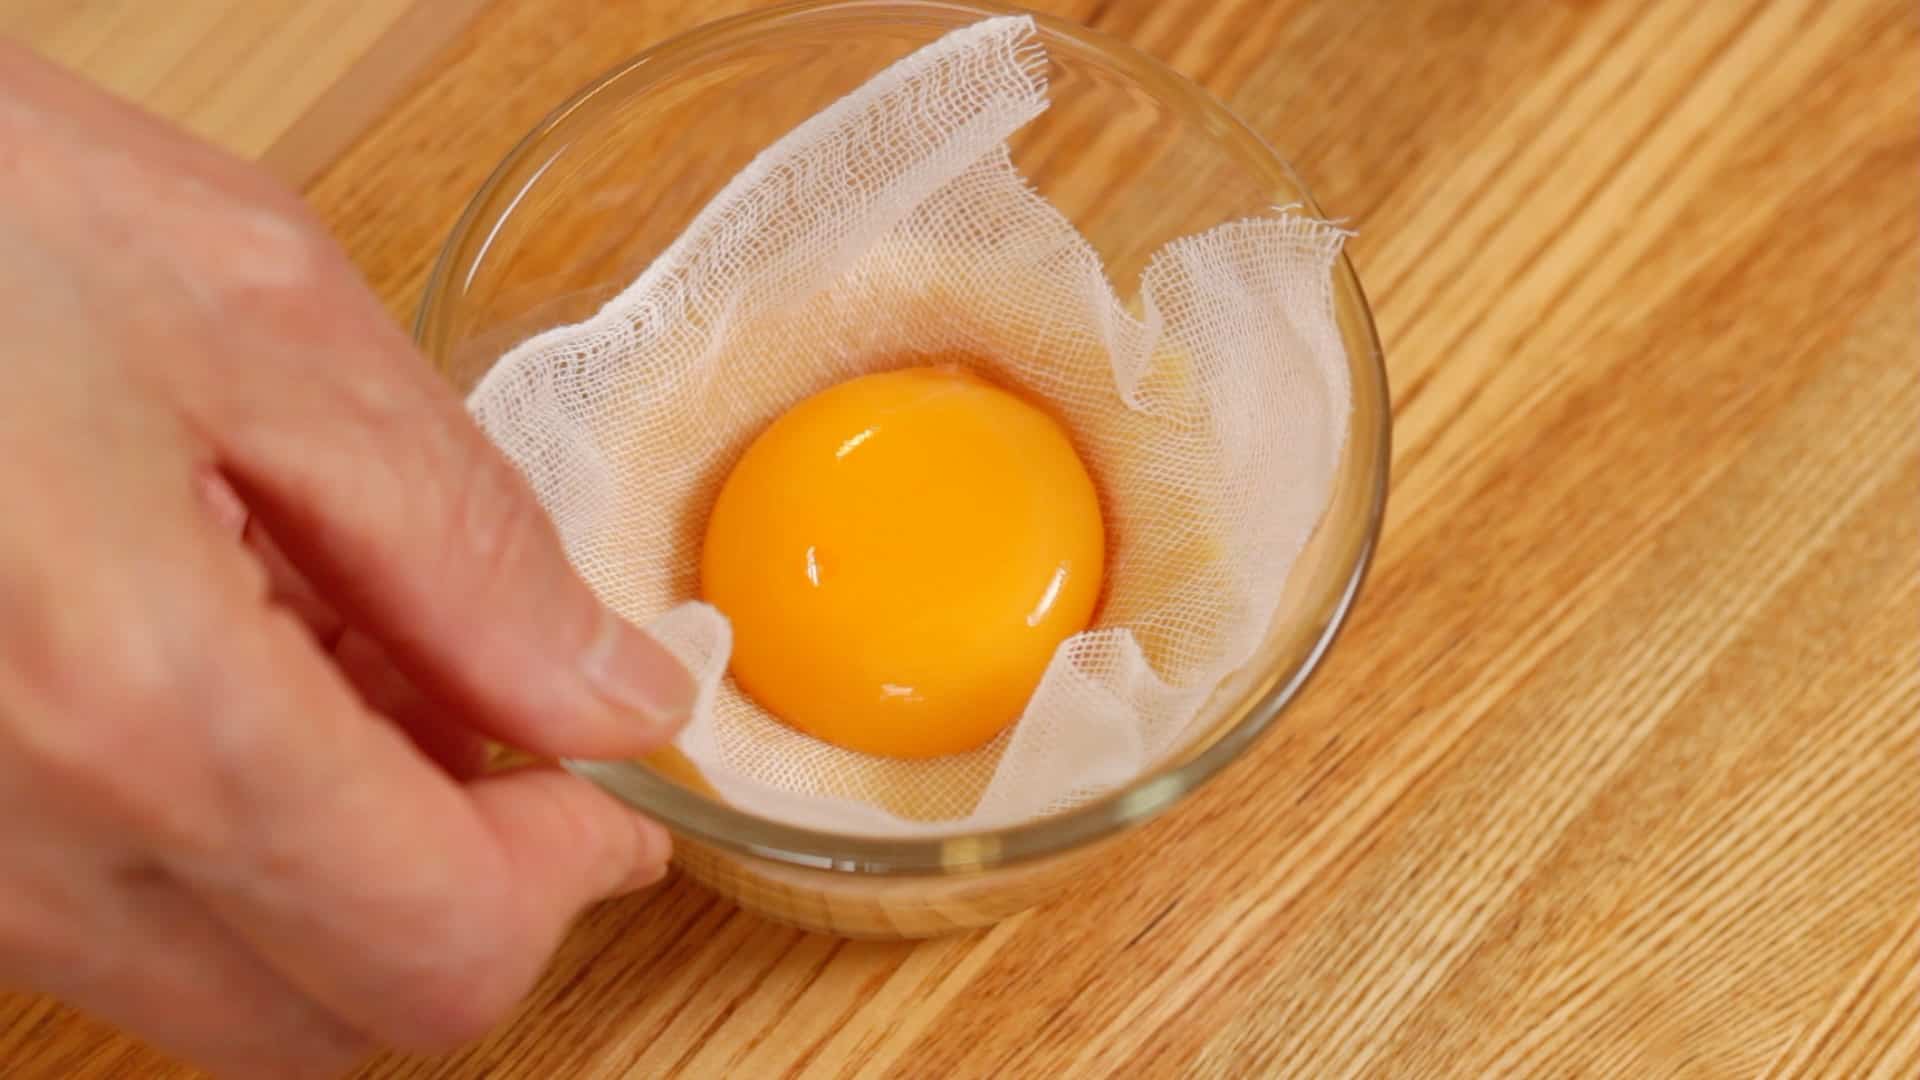 The strongest egg yolk. Желток куриного яйца. Куриный желток. Яичные белки. Яйцо в руке.